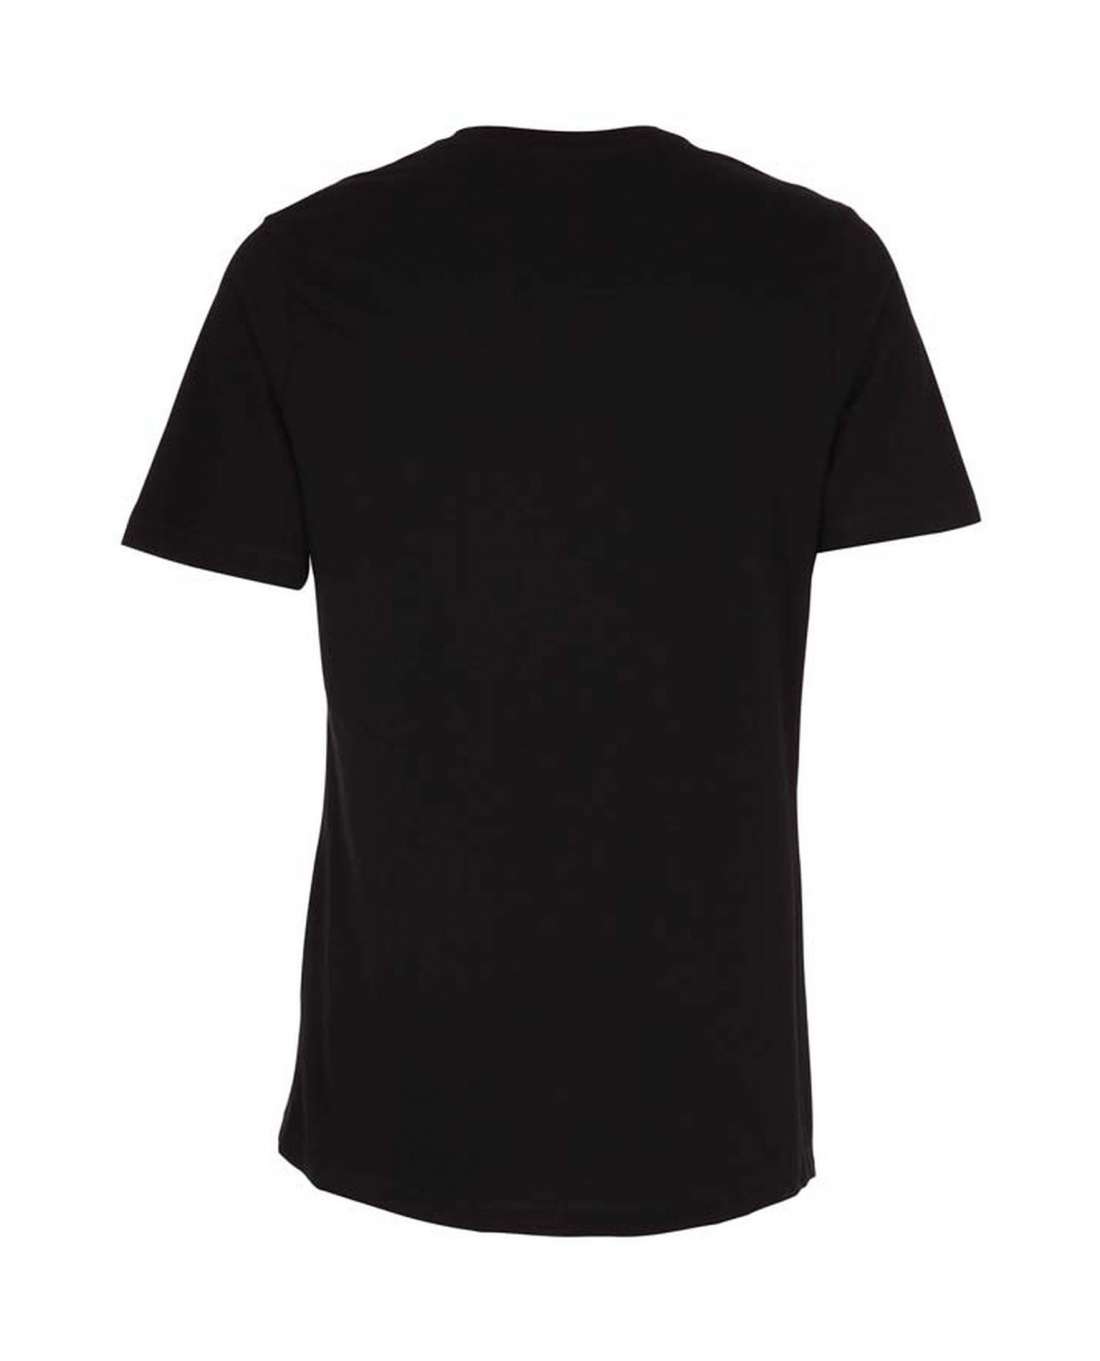 ST315 Miesten pitkähelmainen t-paita, Musta